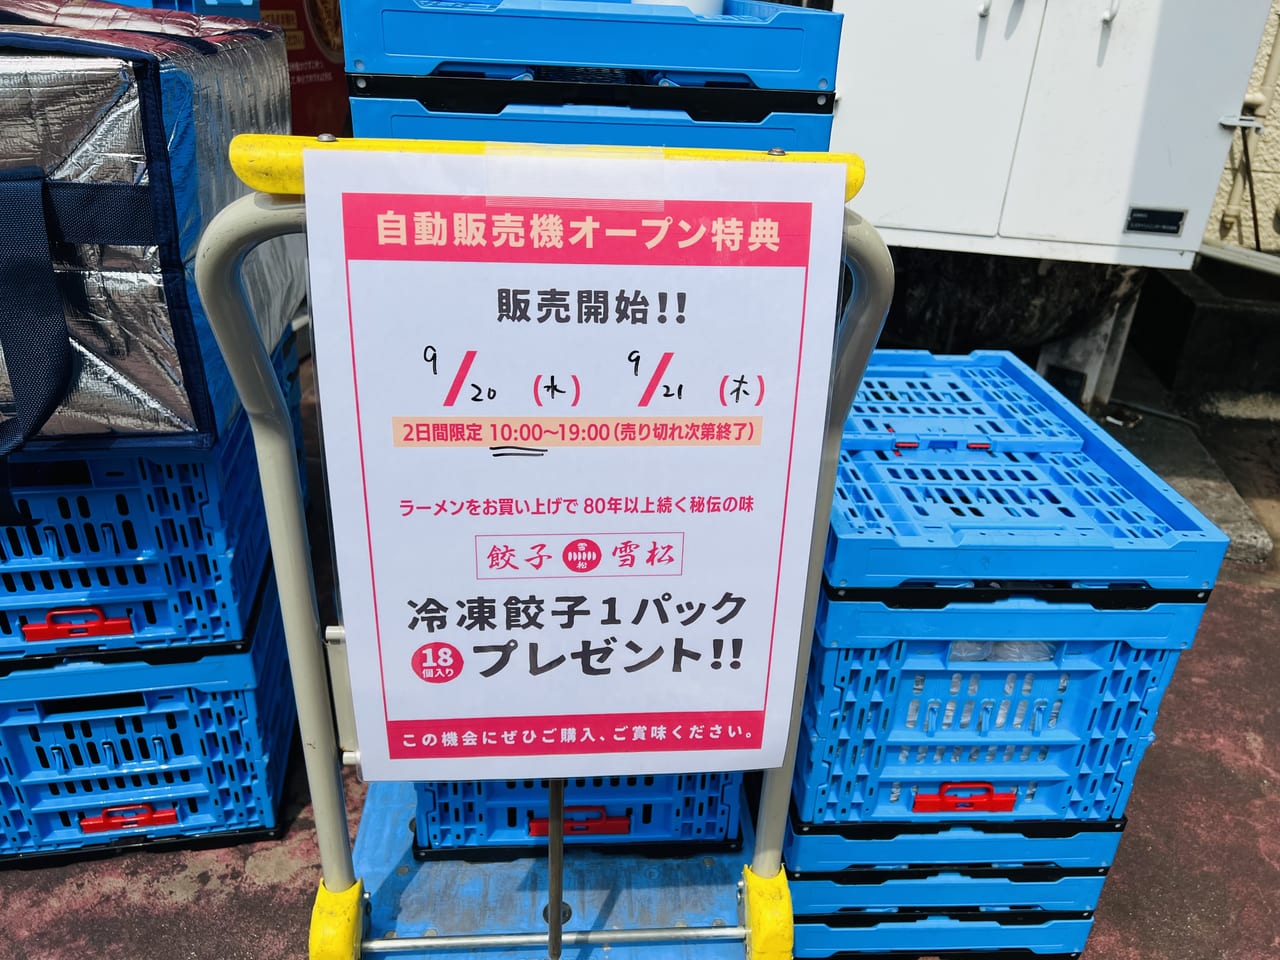 「日本ラーメン科学研究所 イオン高知旭町店」のオープニングキャンペーンの詳細